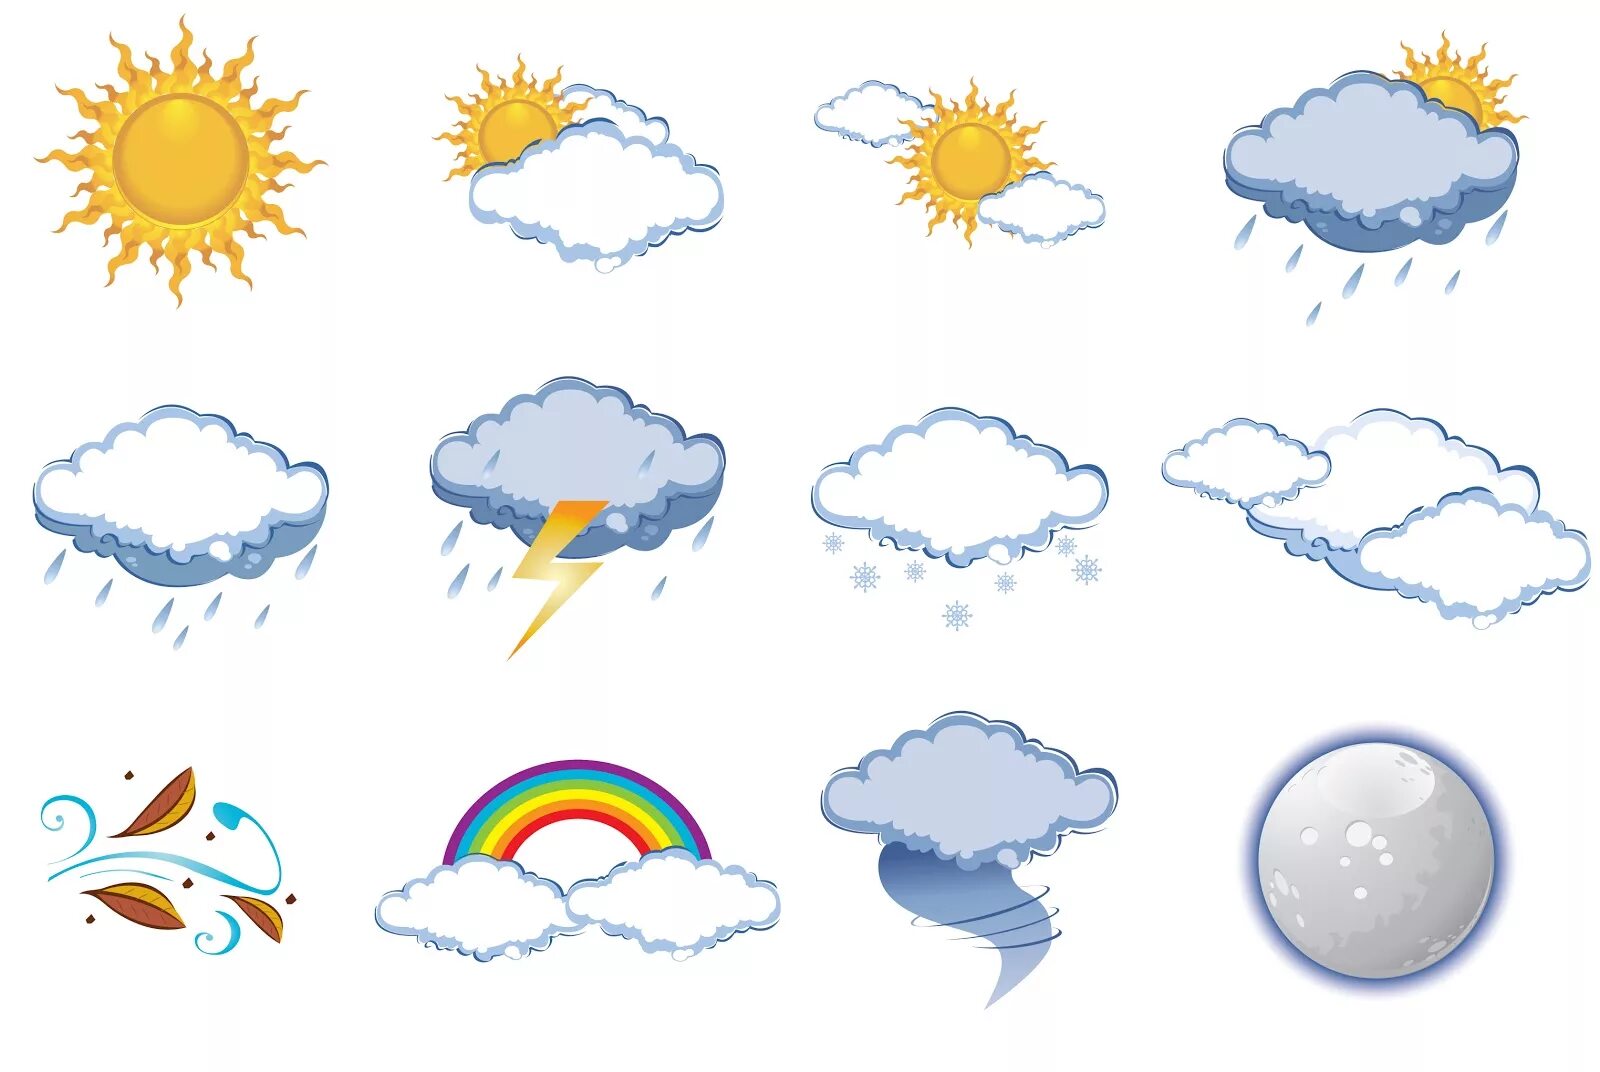 Погодные явления картинки для детей. Погода на английском языке. Gjujlf ZF fzukbqcrjv. Погода картинки на английском для детей.